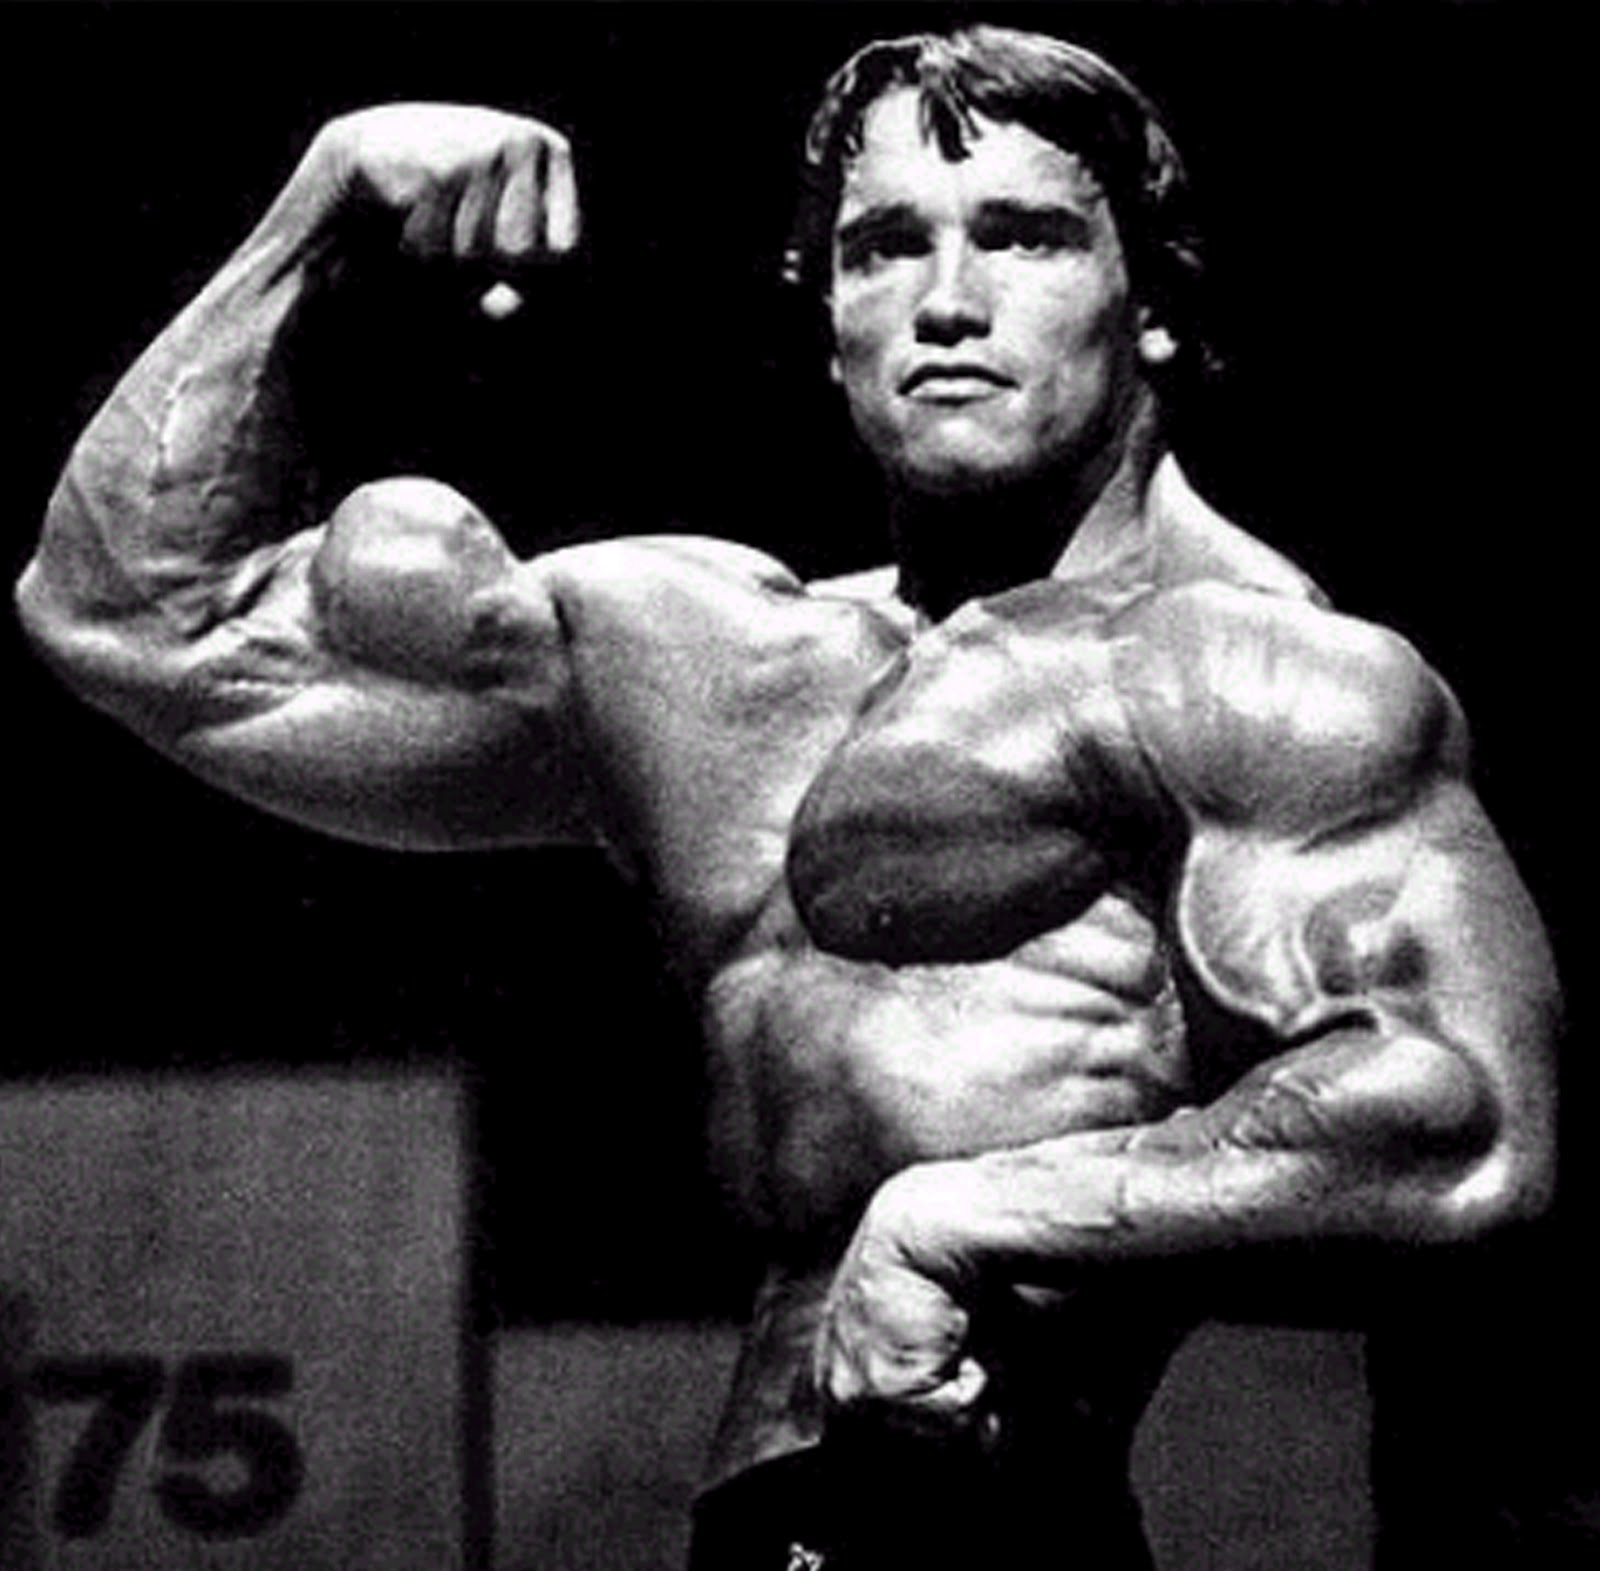 Arnie [1970-1972]